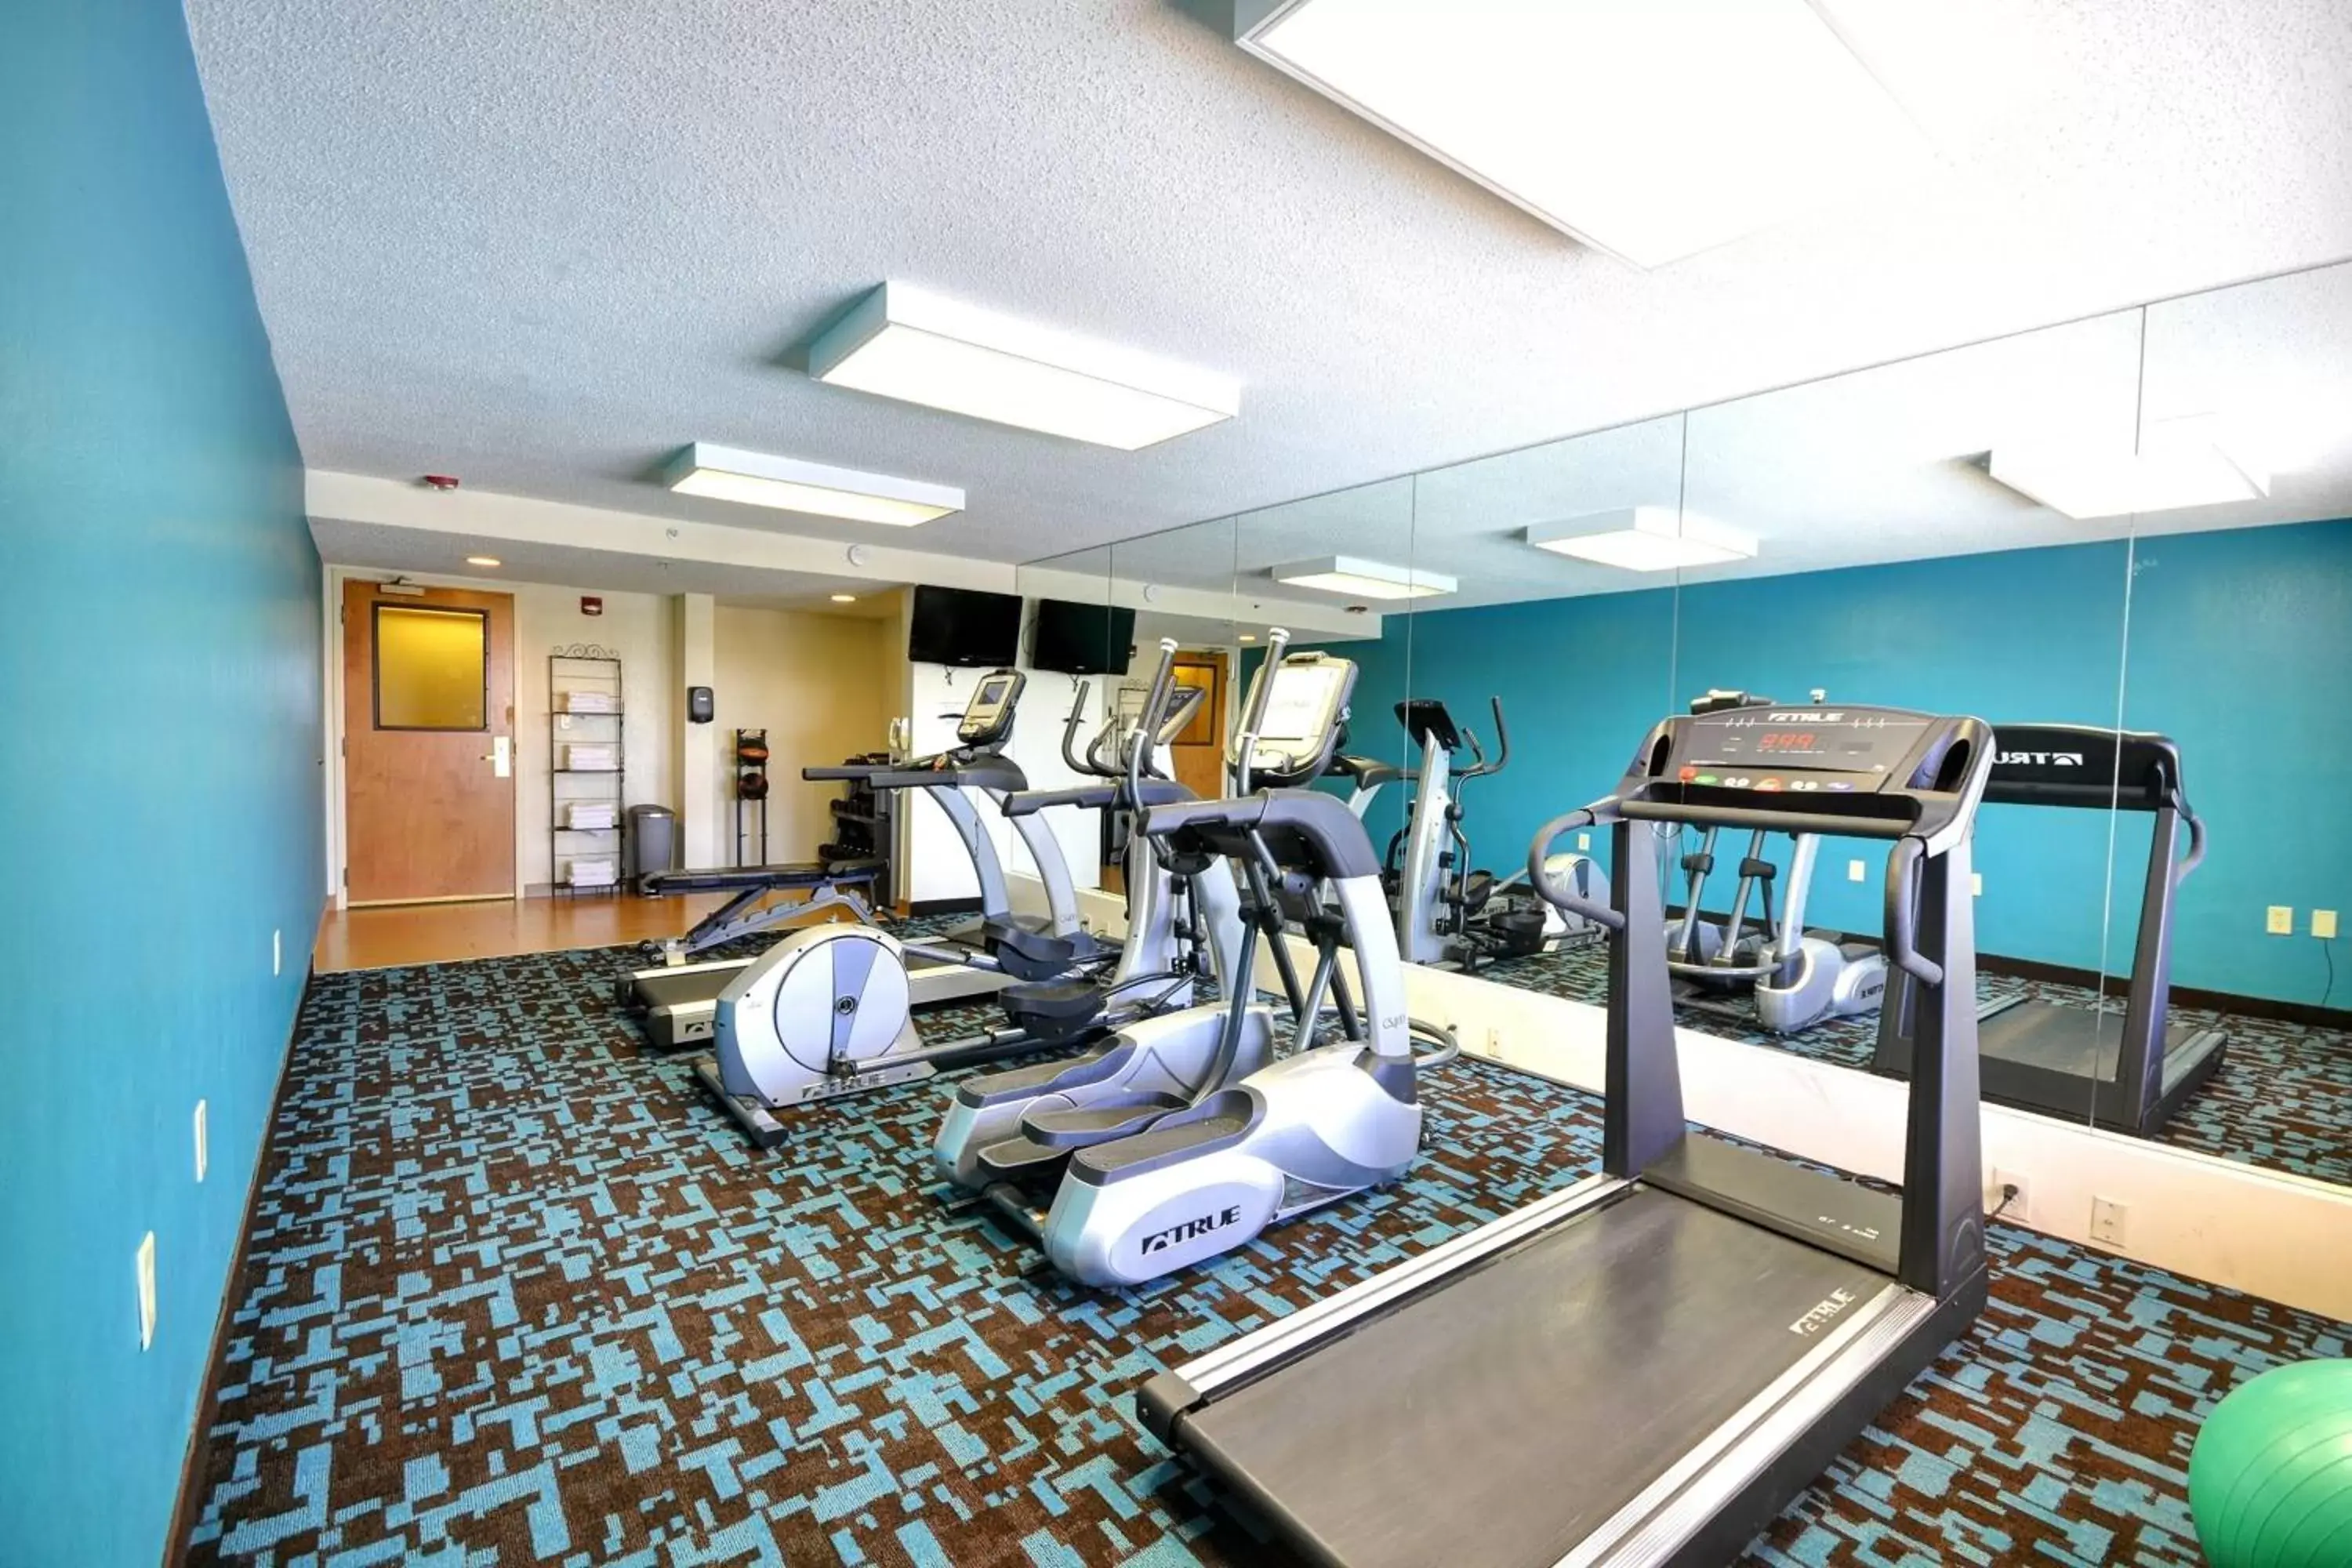 Fitness centre/facilities, Fitness Center/Facilities in Fairfield Inn & Suites by Marriott Atlanta Vinings/Galleria